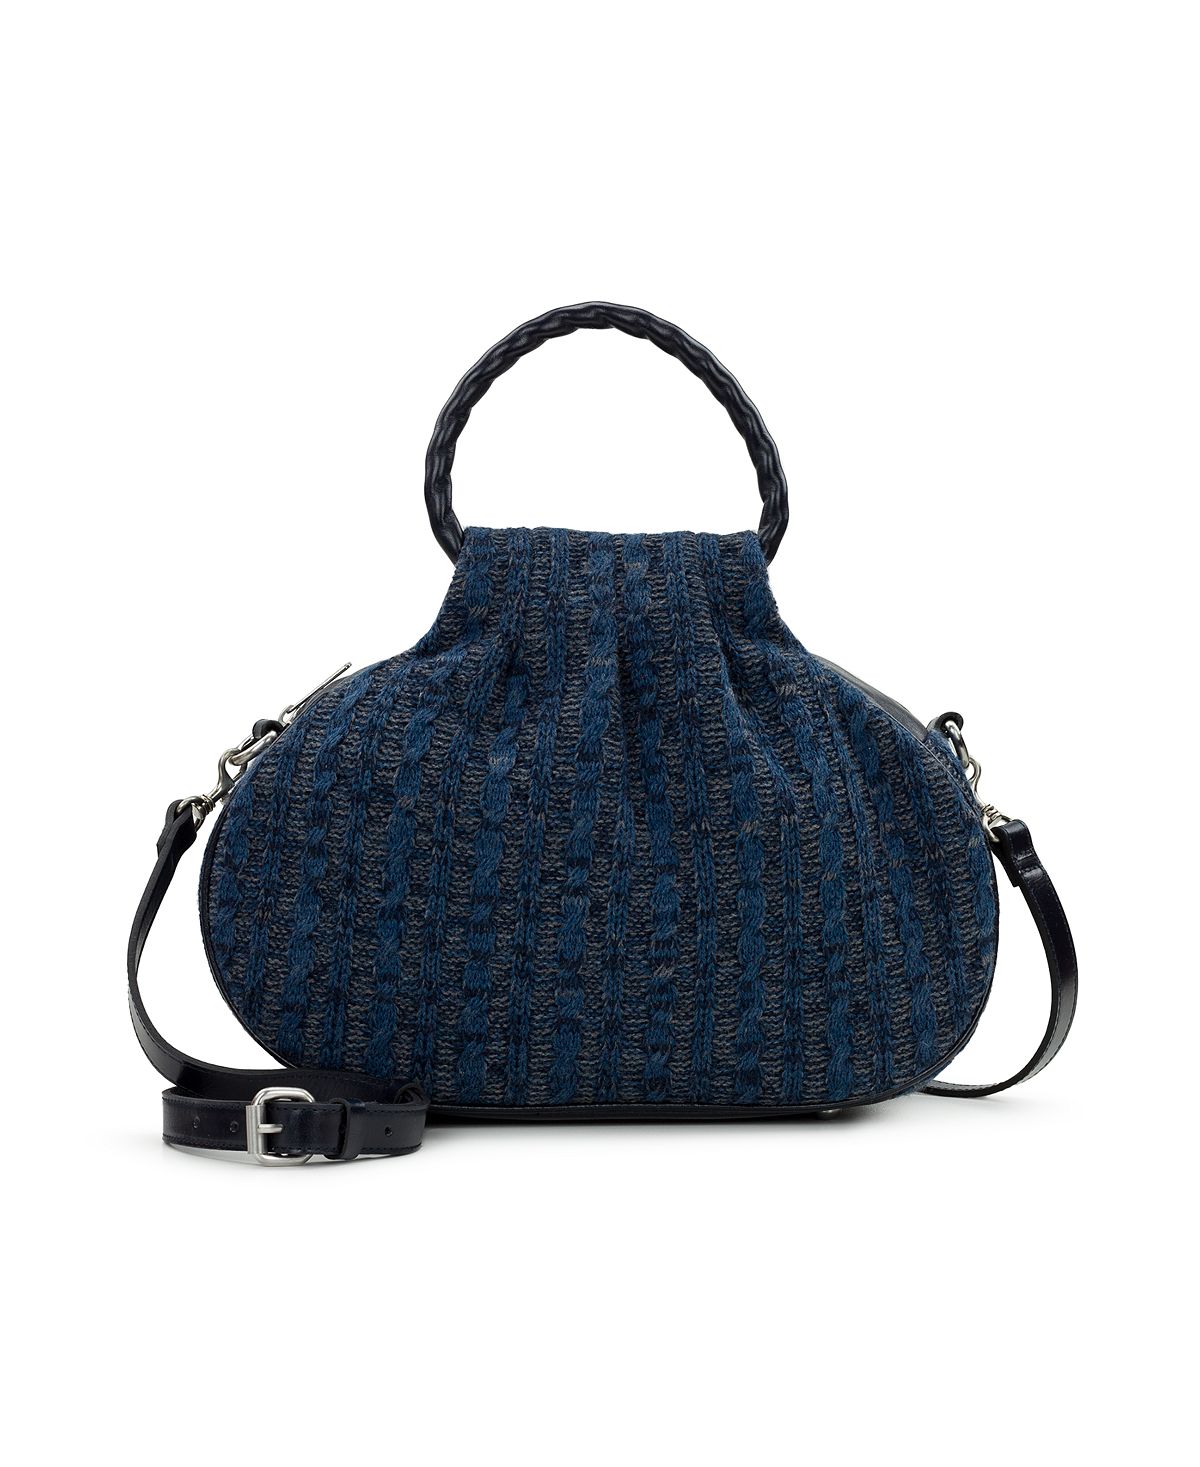 Женская сумка через плечо Linley среднего размера Patricia Nash, синий martinez patricia container